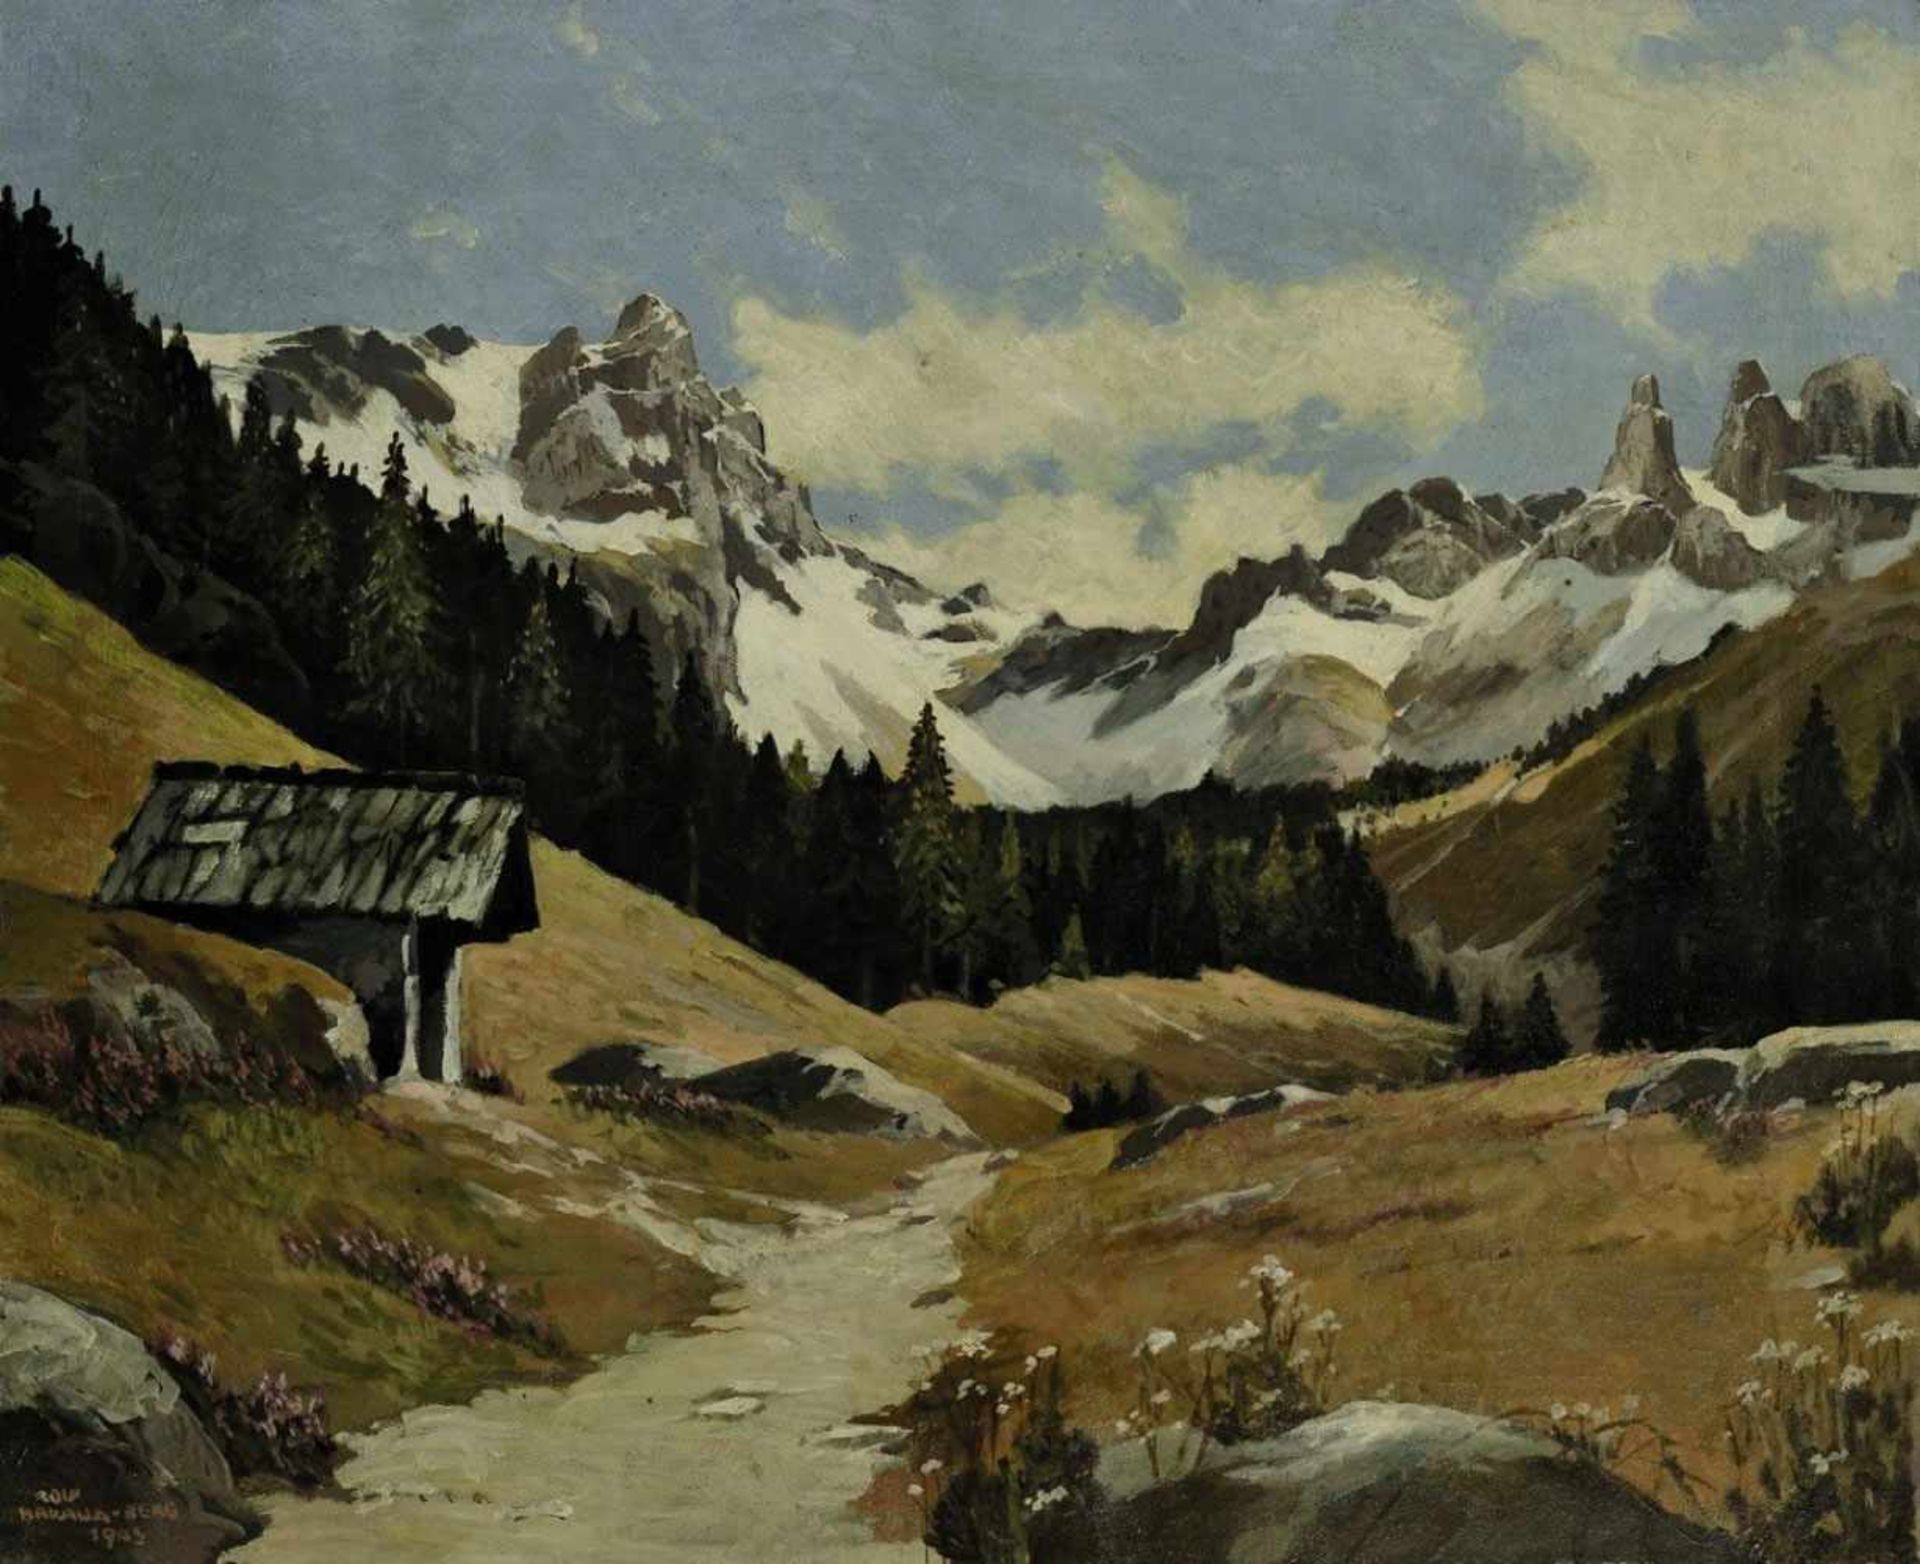 Bakalla, Rolf geb. 1877 Wien Gebirgslandschaft Öl/Lwd. 49,5 x 59,5 cm. L. u. signiert, bez. "Berg"